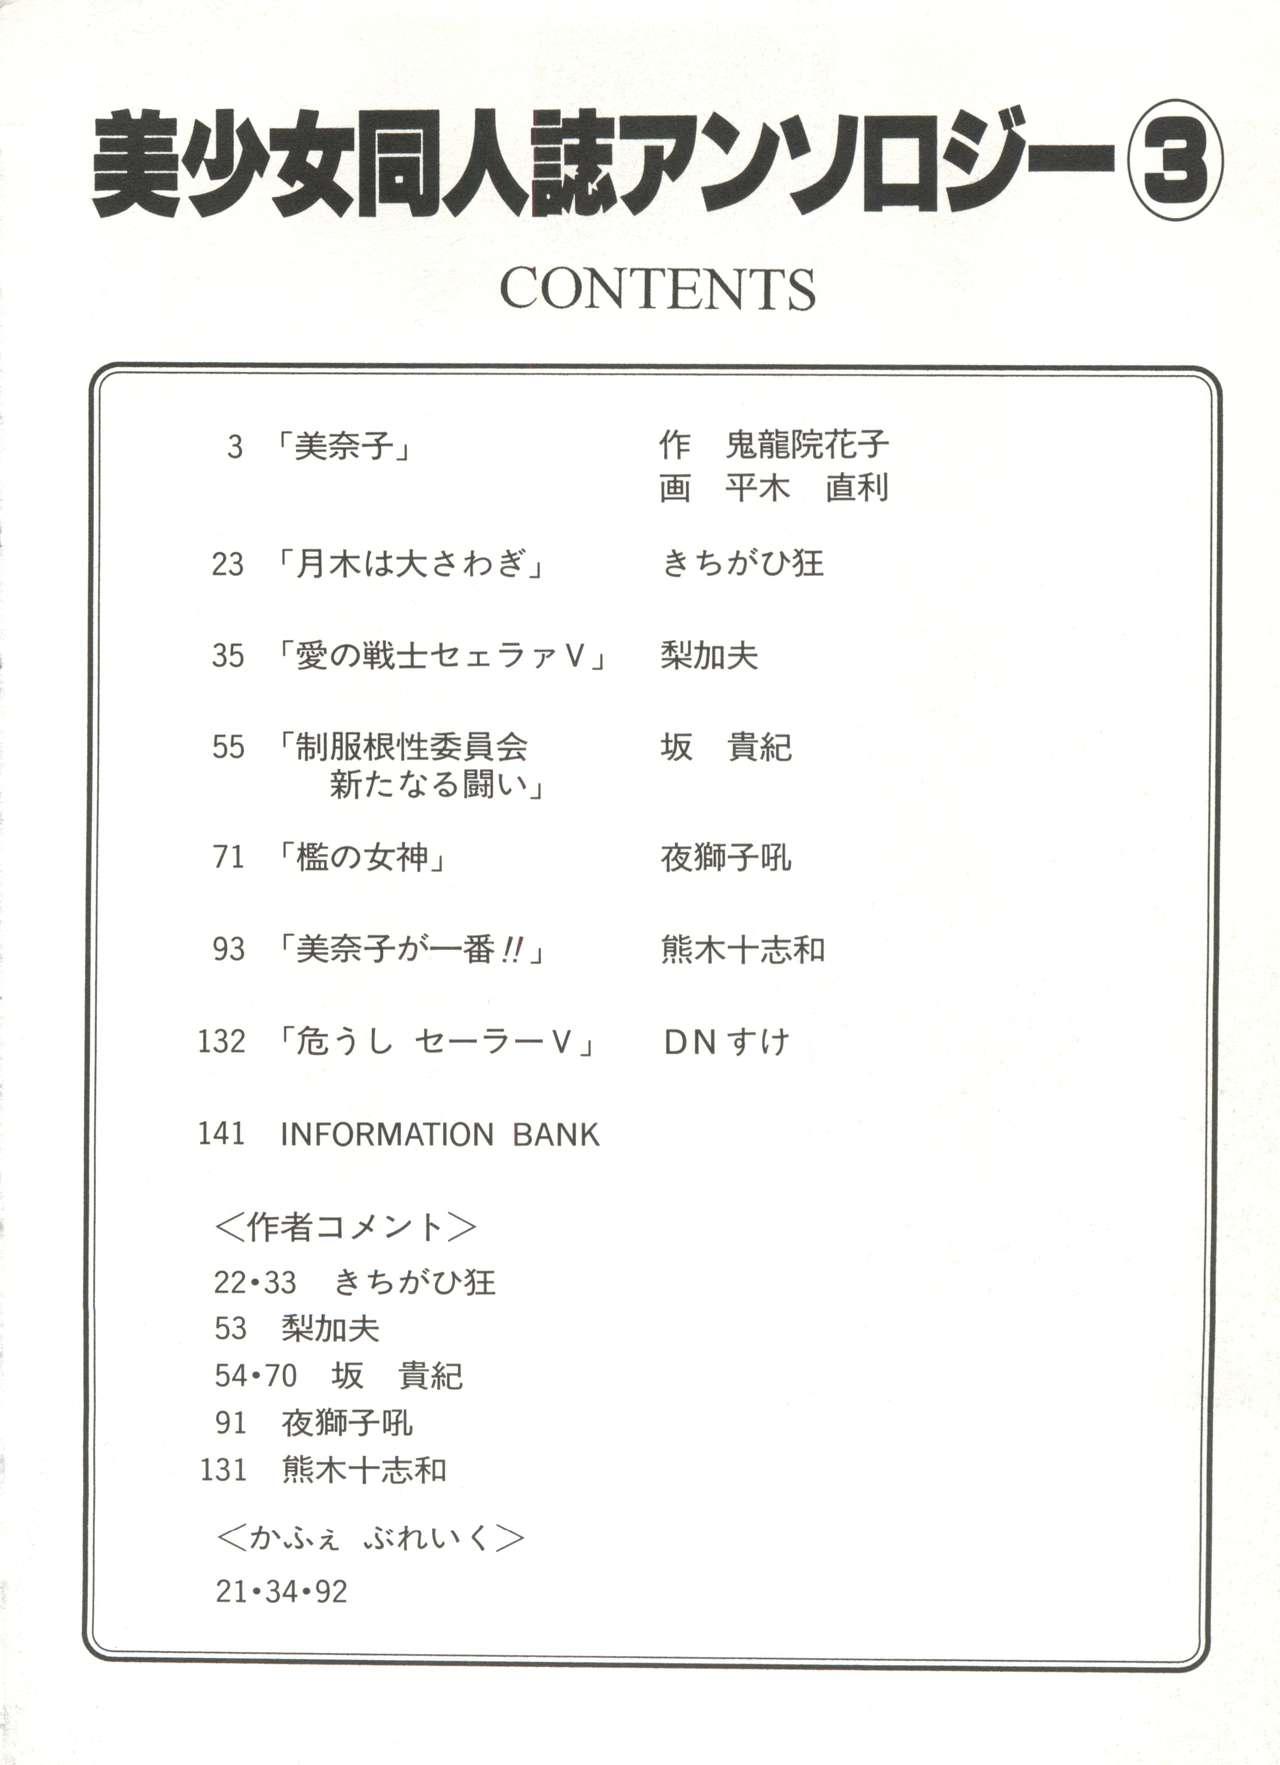 Tribbing Bishoujo Doujinshi Anthology 3 - Moon Paradise 2 Tsuki no Rakuen - Sailor moon Amateurs - Page 7